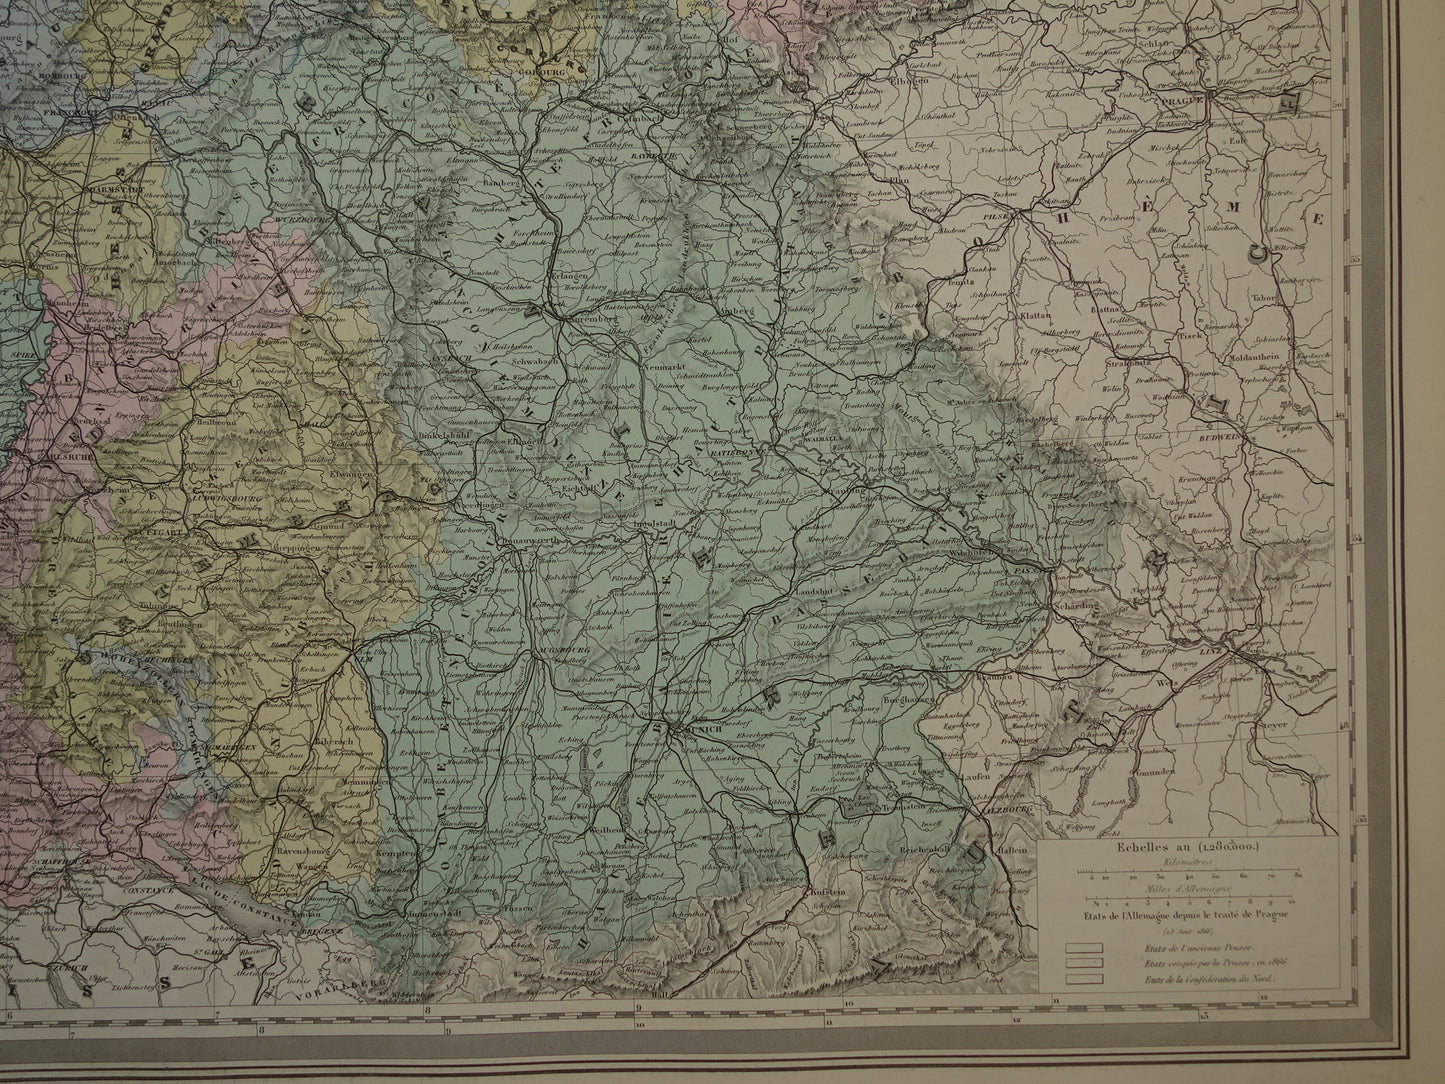 Oude kaart van DUITSLAND Grote landkaart uit 1880 originele antieke handgekleurde kaarten